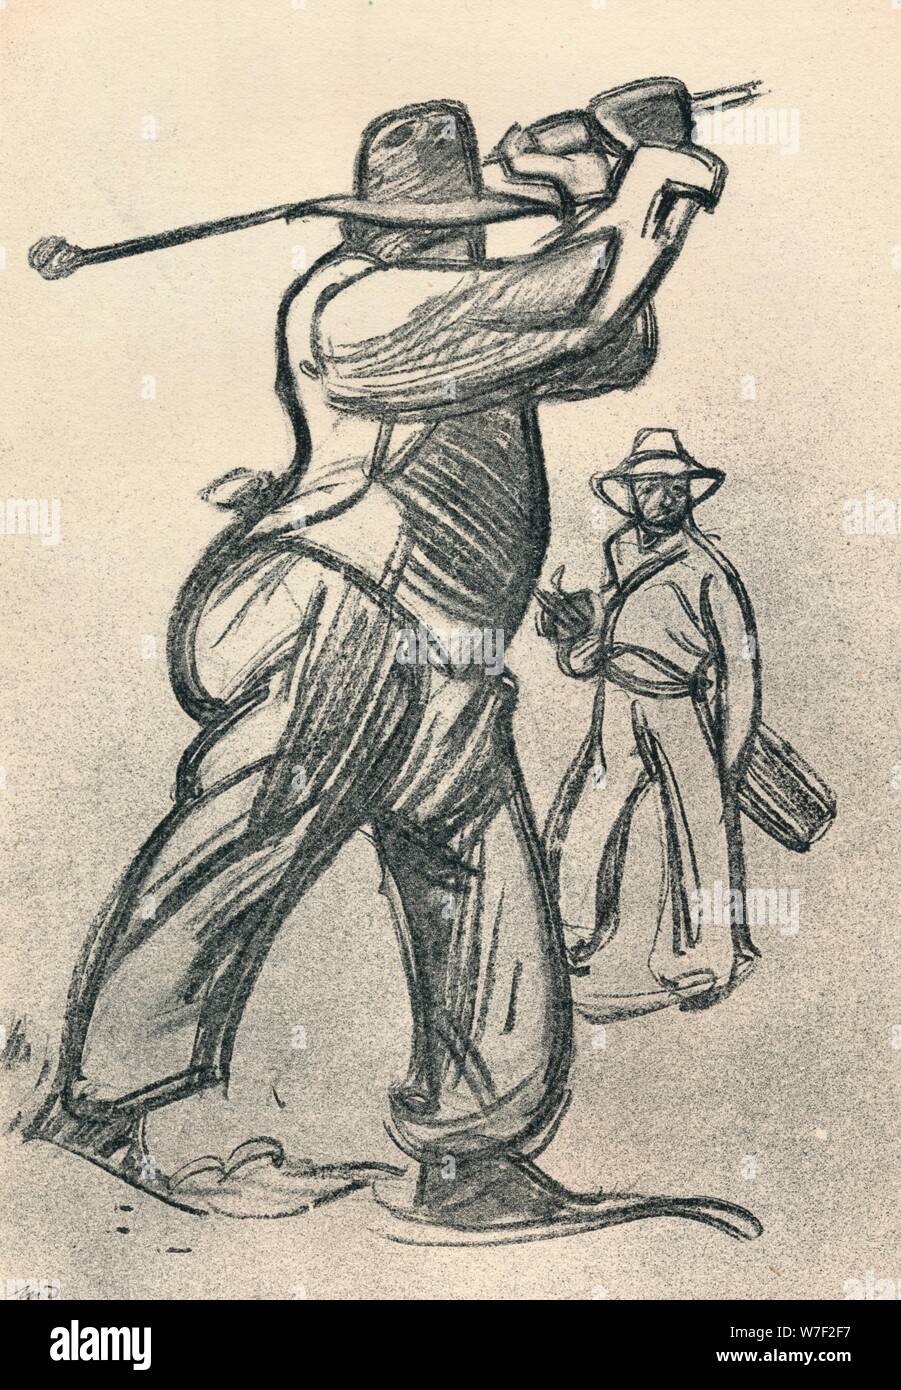 "Le Joueur de golf', C1920, (1923). Artista: Maxime Dethomas. Foto de stock